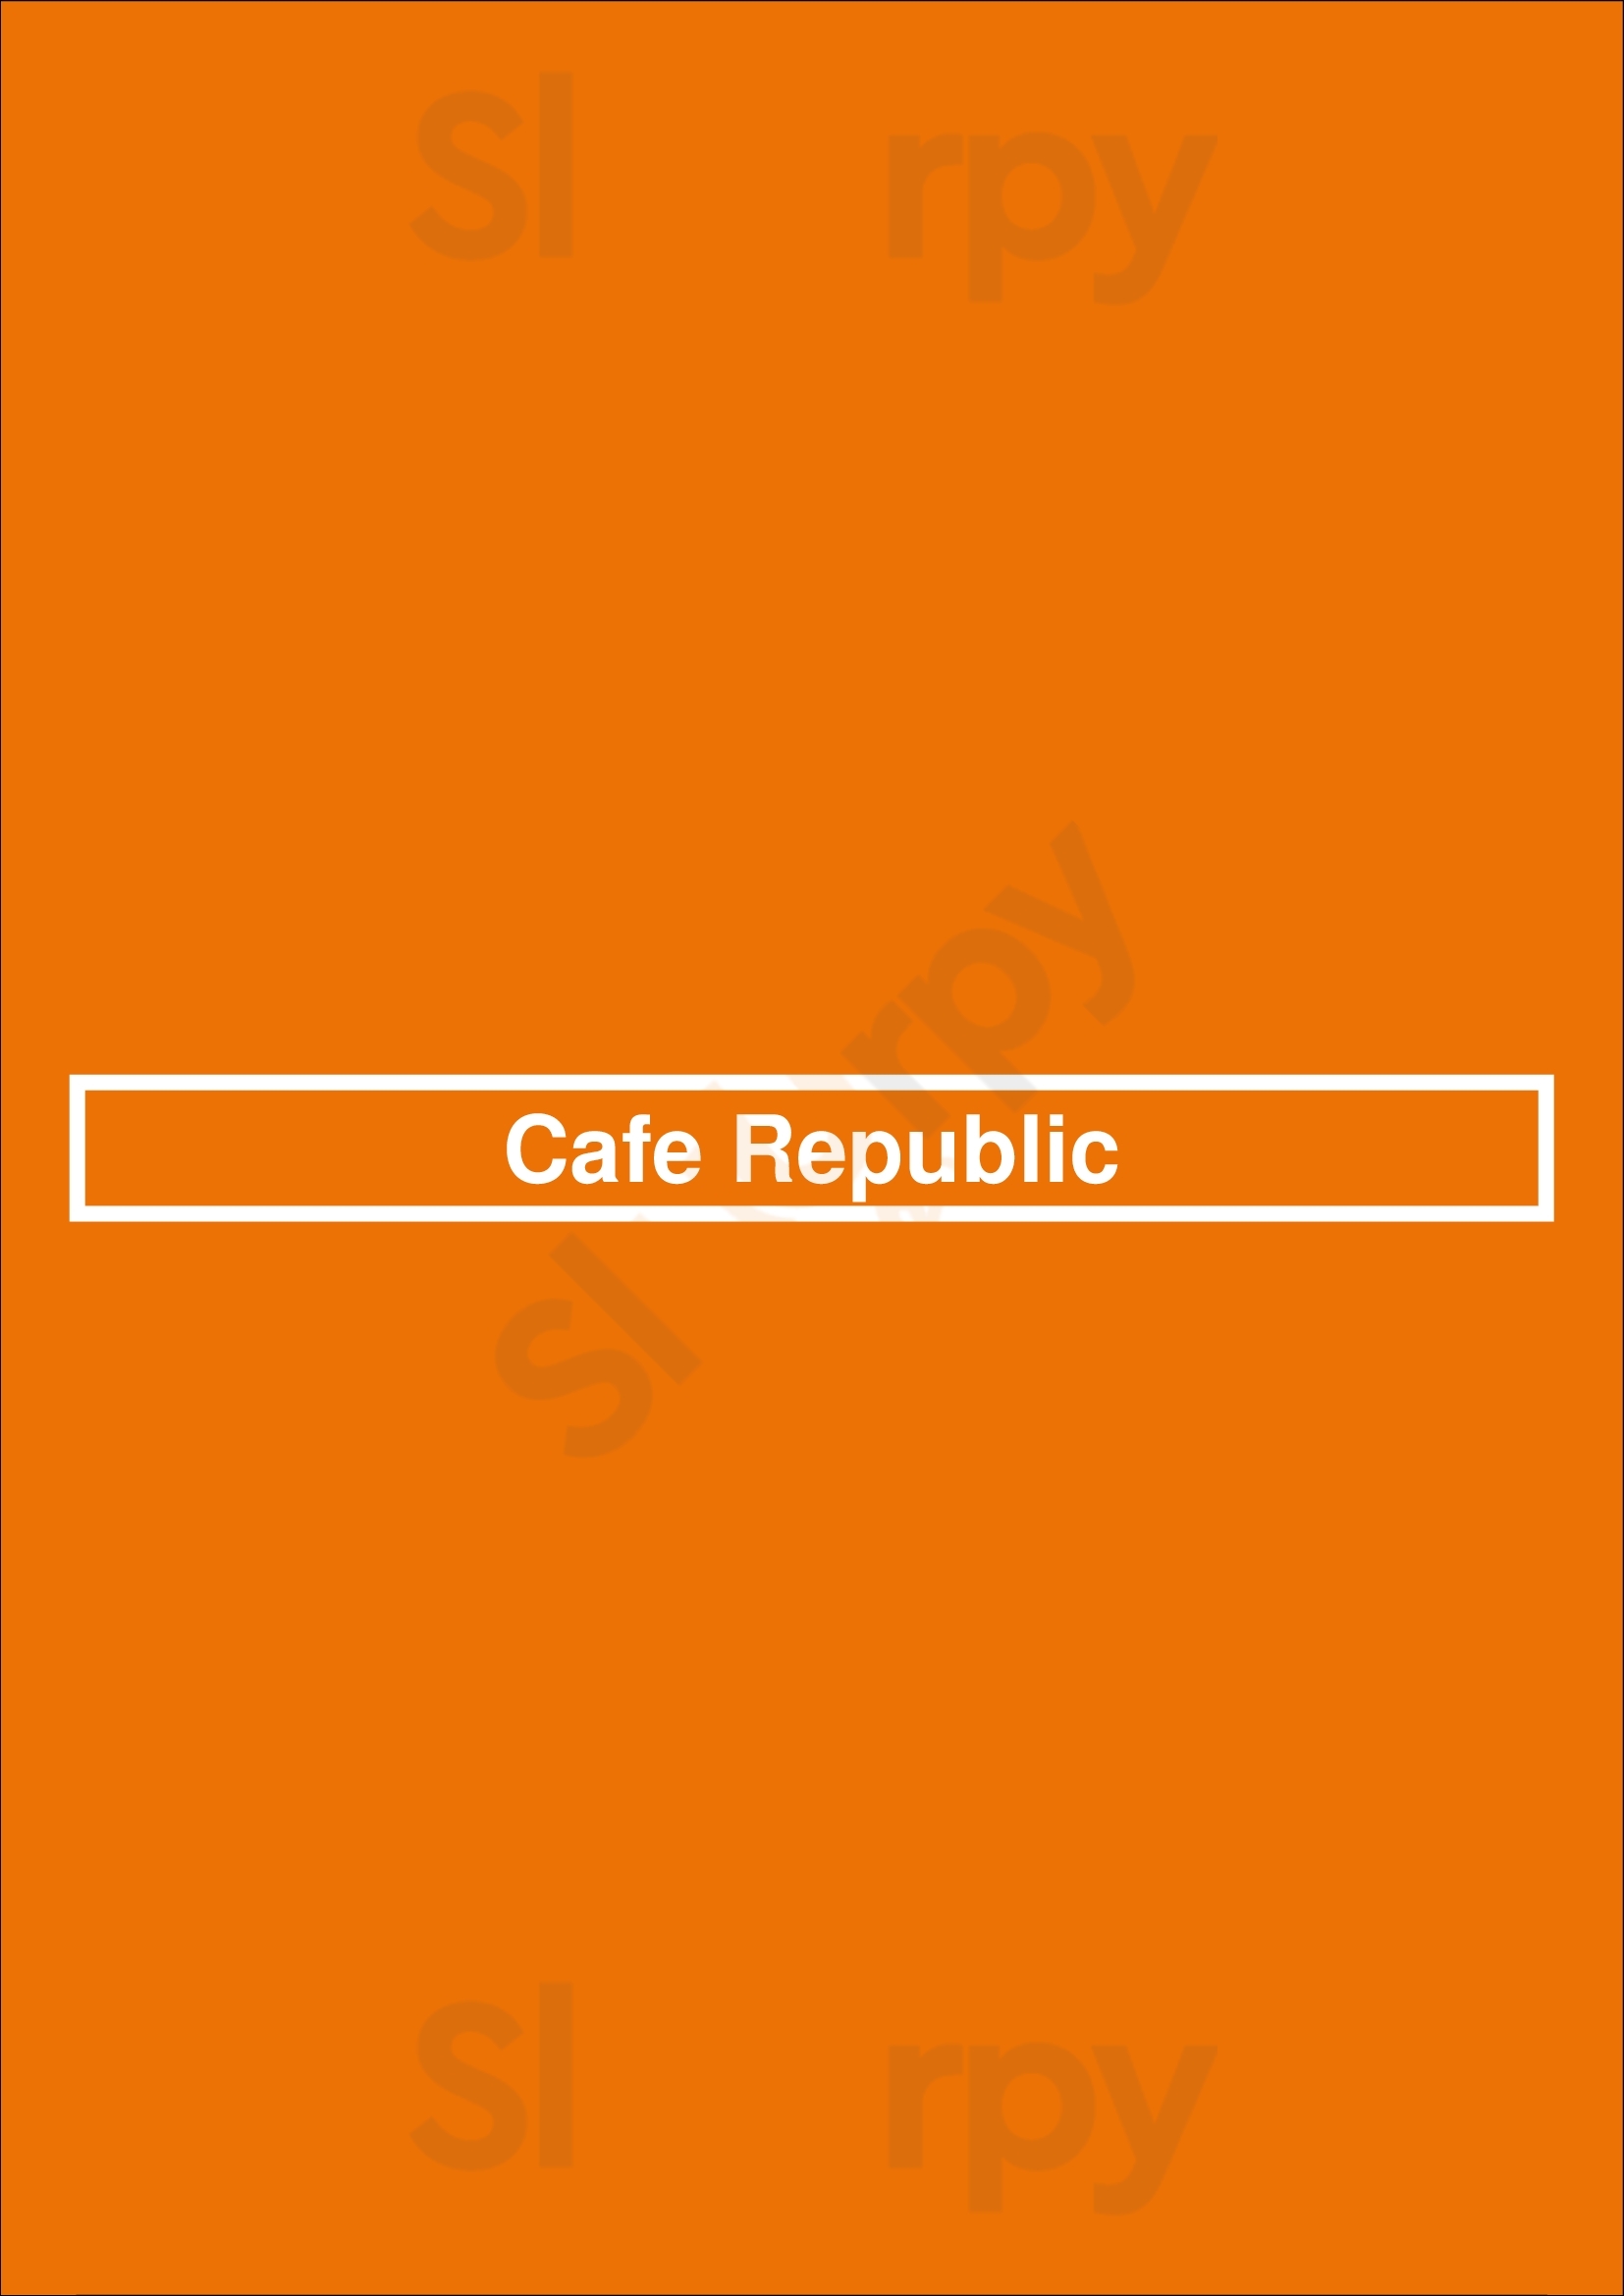 Cafe Republic Yarra Menu - 1